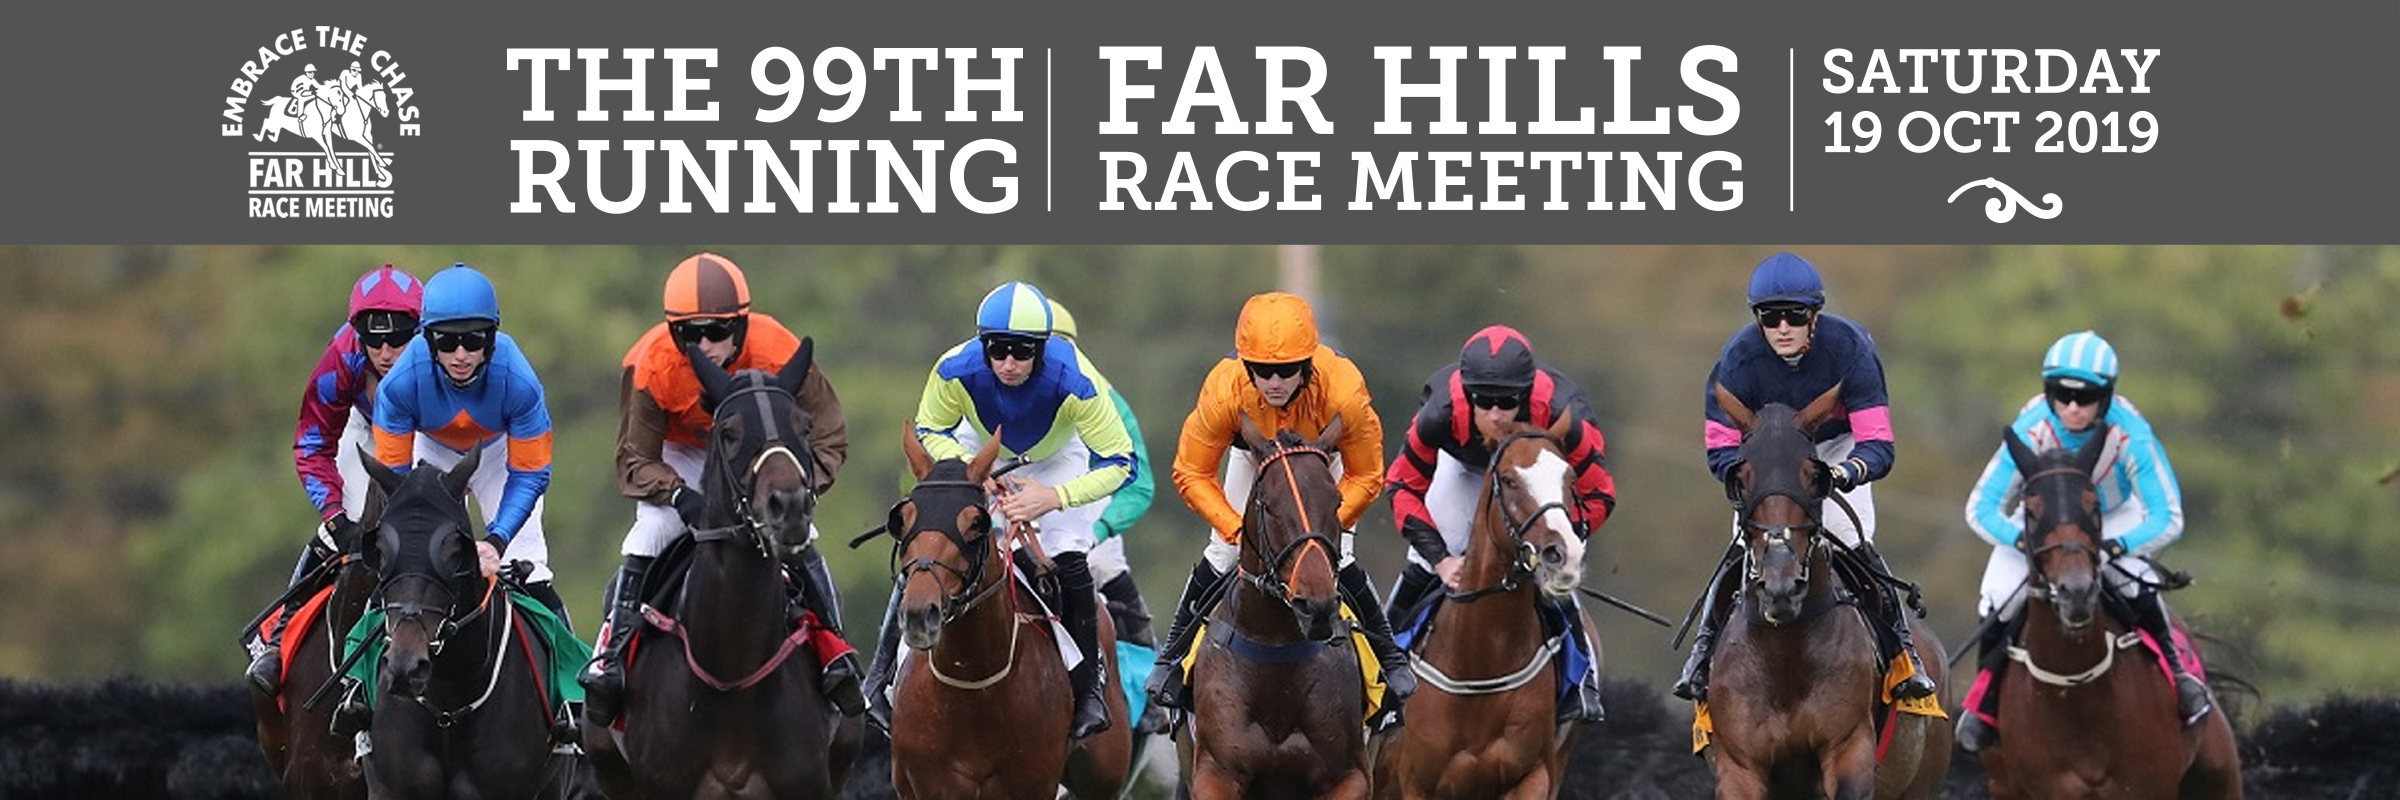 Far Hills Race Meeting Association, Inc. Cart